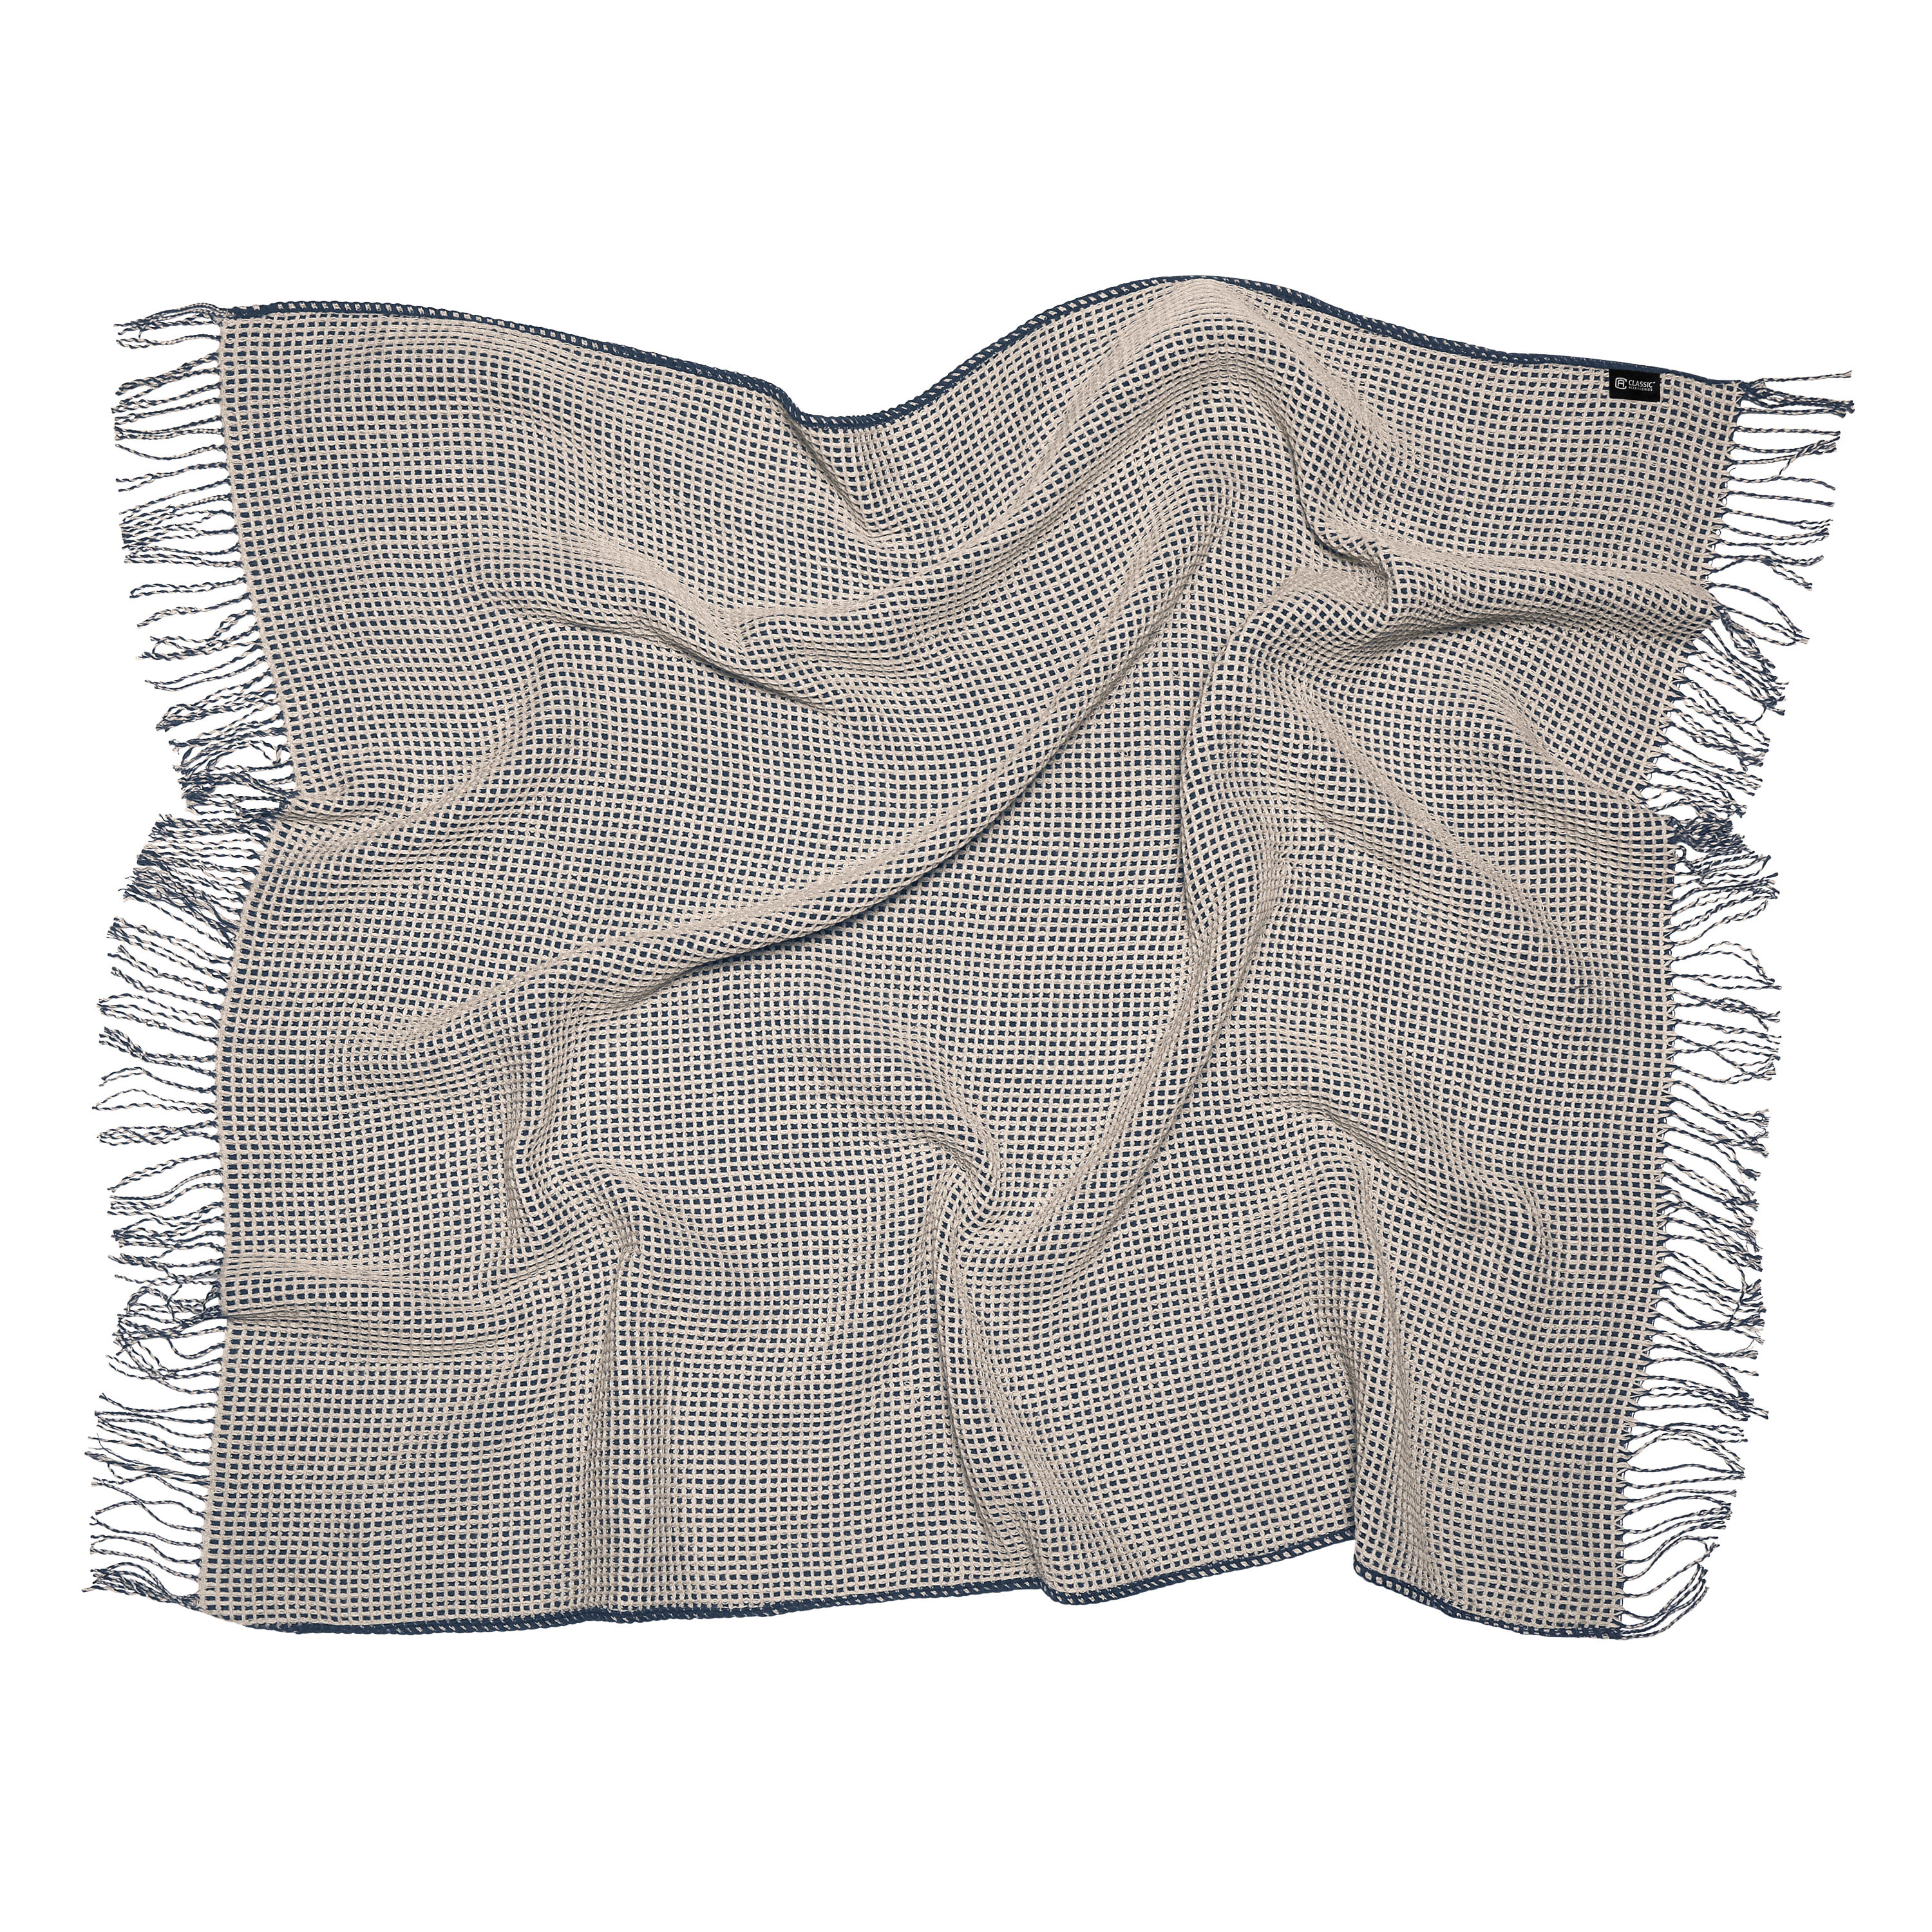 Classic Accessories Indoor/Outdoor Reversible Throw Blanket 66 x 59 Inch Dark Taupe